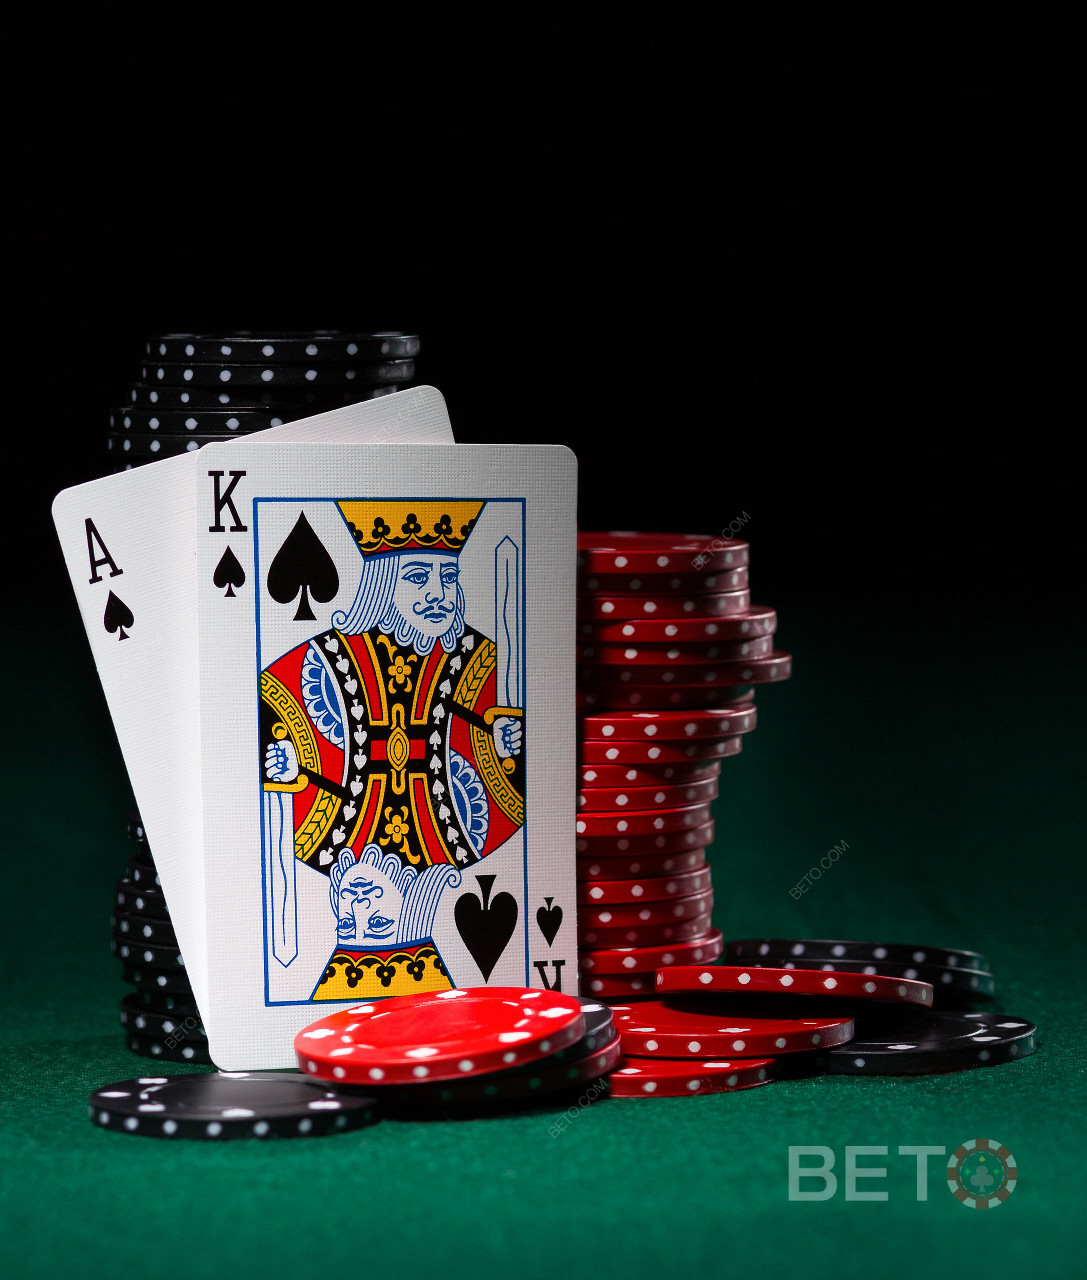 Παιχνίδια βίντεο πόκερ και παιχνίδια με κάρτες είναι επίσης διαθέσιμα στο BitStarz.